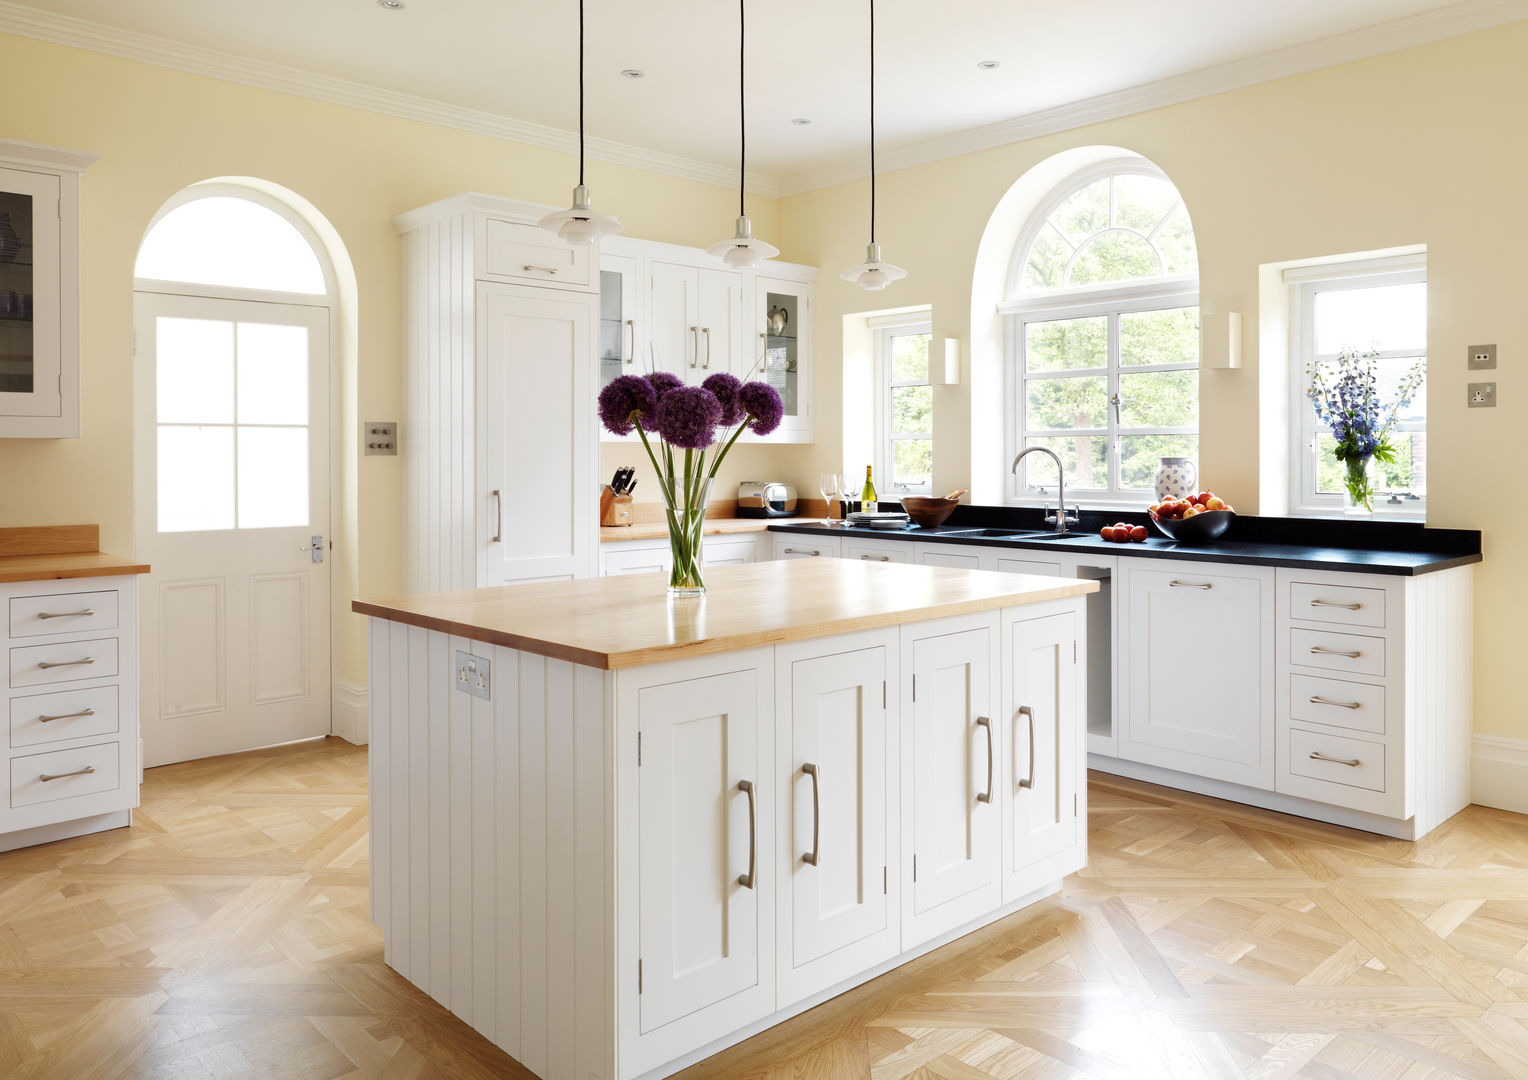 Painted Shaker kitchen by Harvey Jones Harvey Jones Kitchens Кухня в классическом стиле